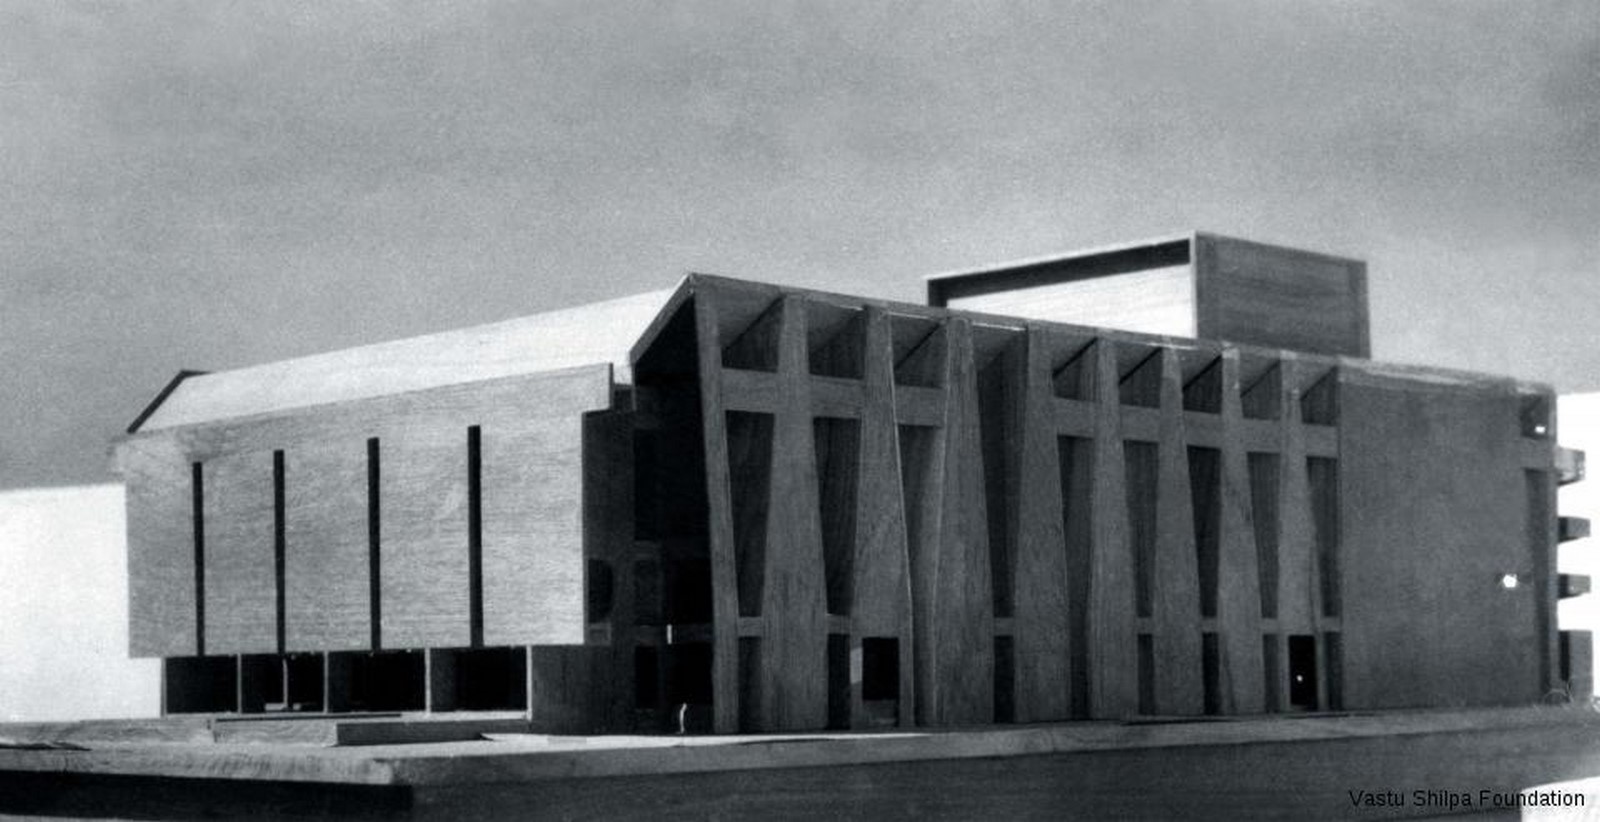 Tagore Memorial Auditorium by B.V Doshi Box of Miracles - Sheet9